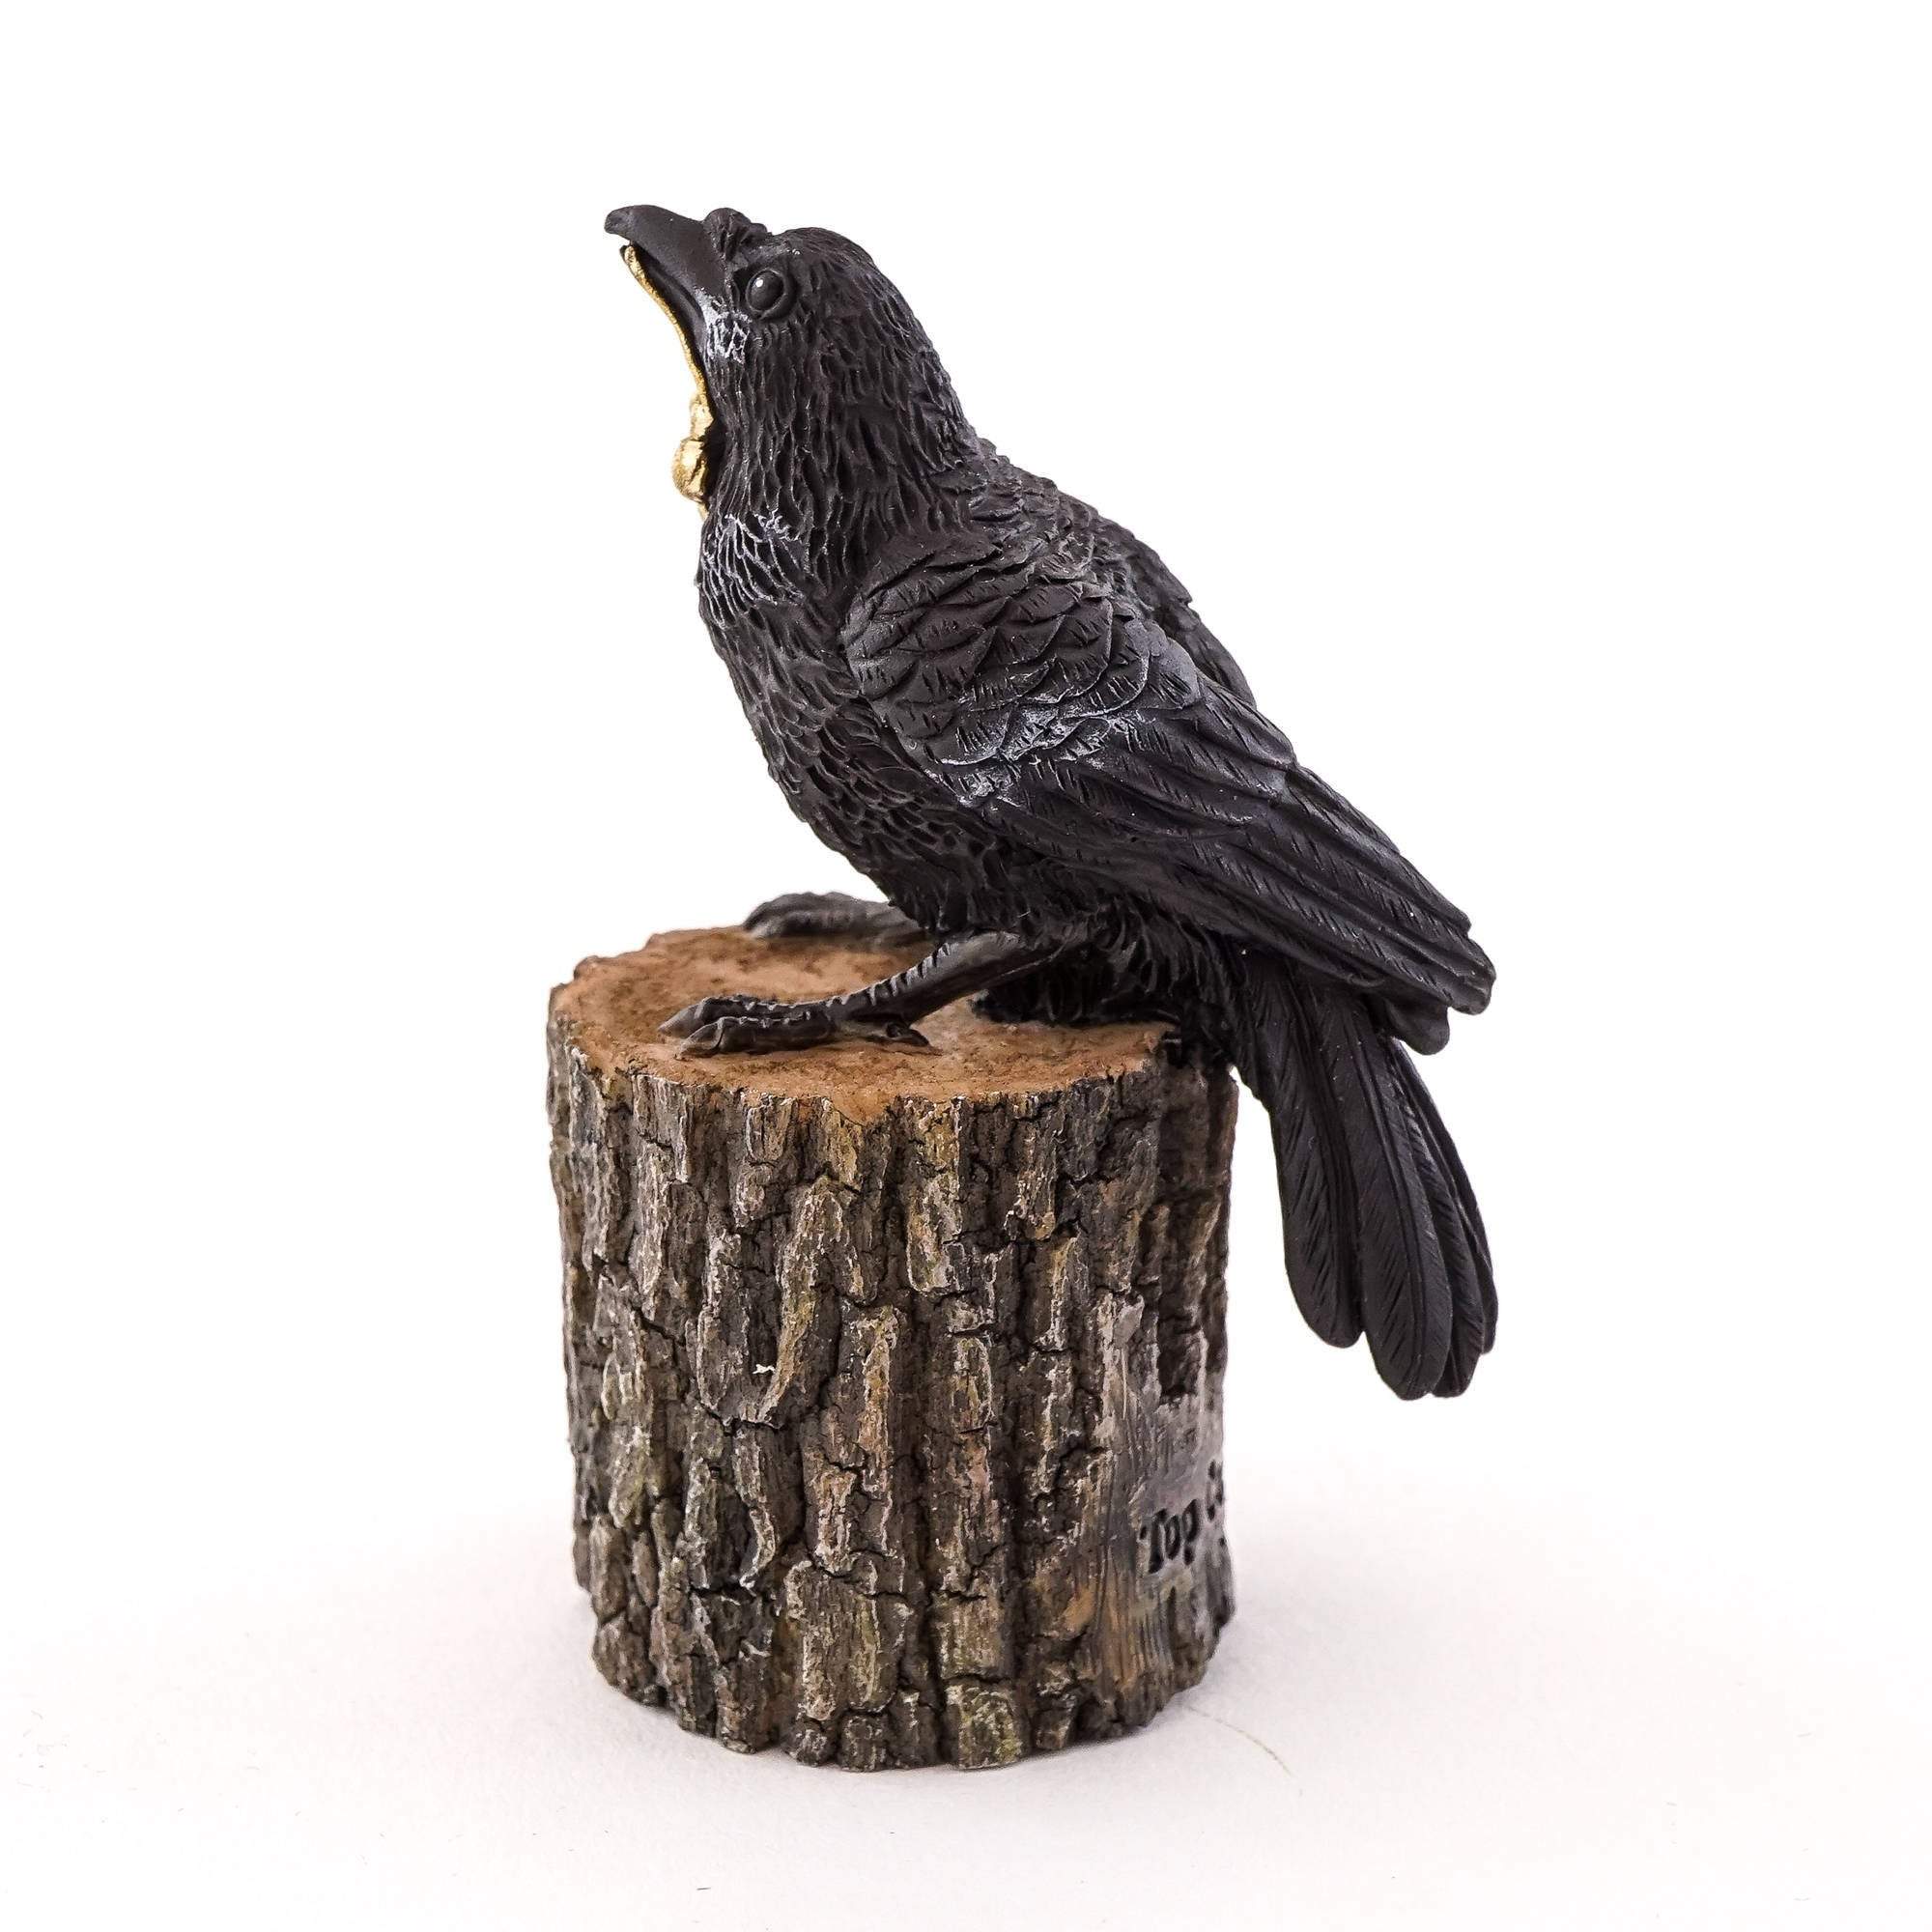 Raven with Key on Tree Stump, Fairy Garden, Mini Bird - Mini Fairy Garden World